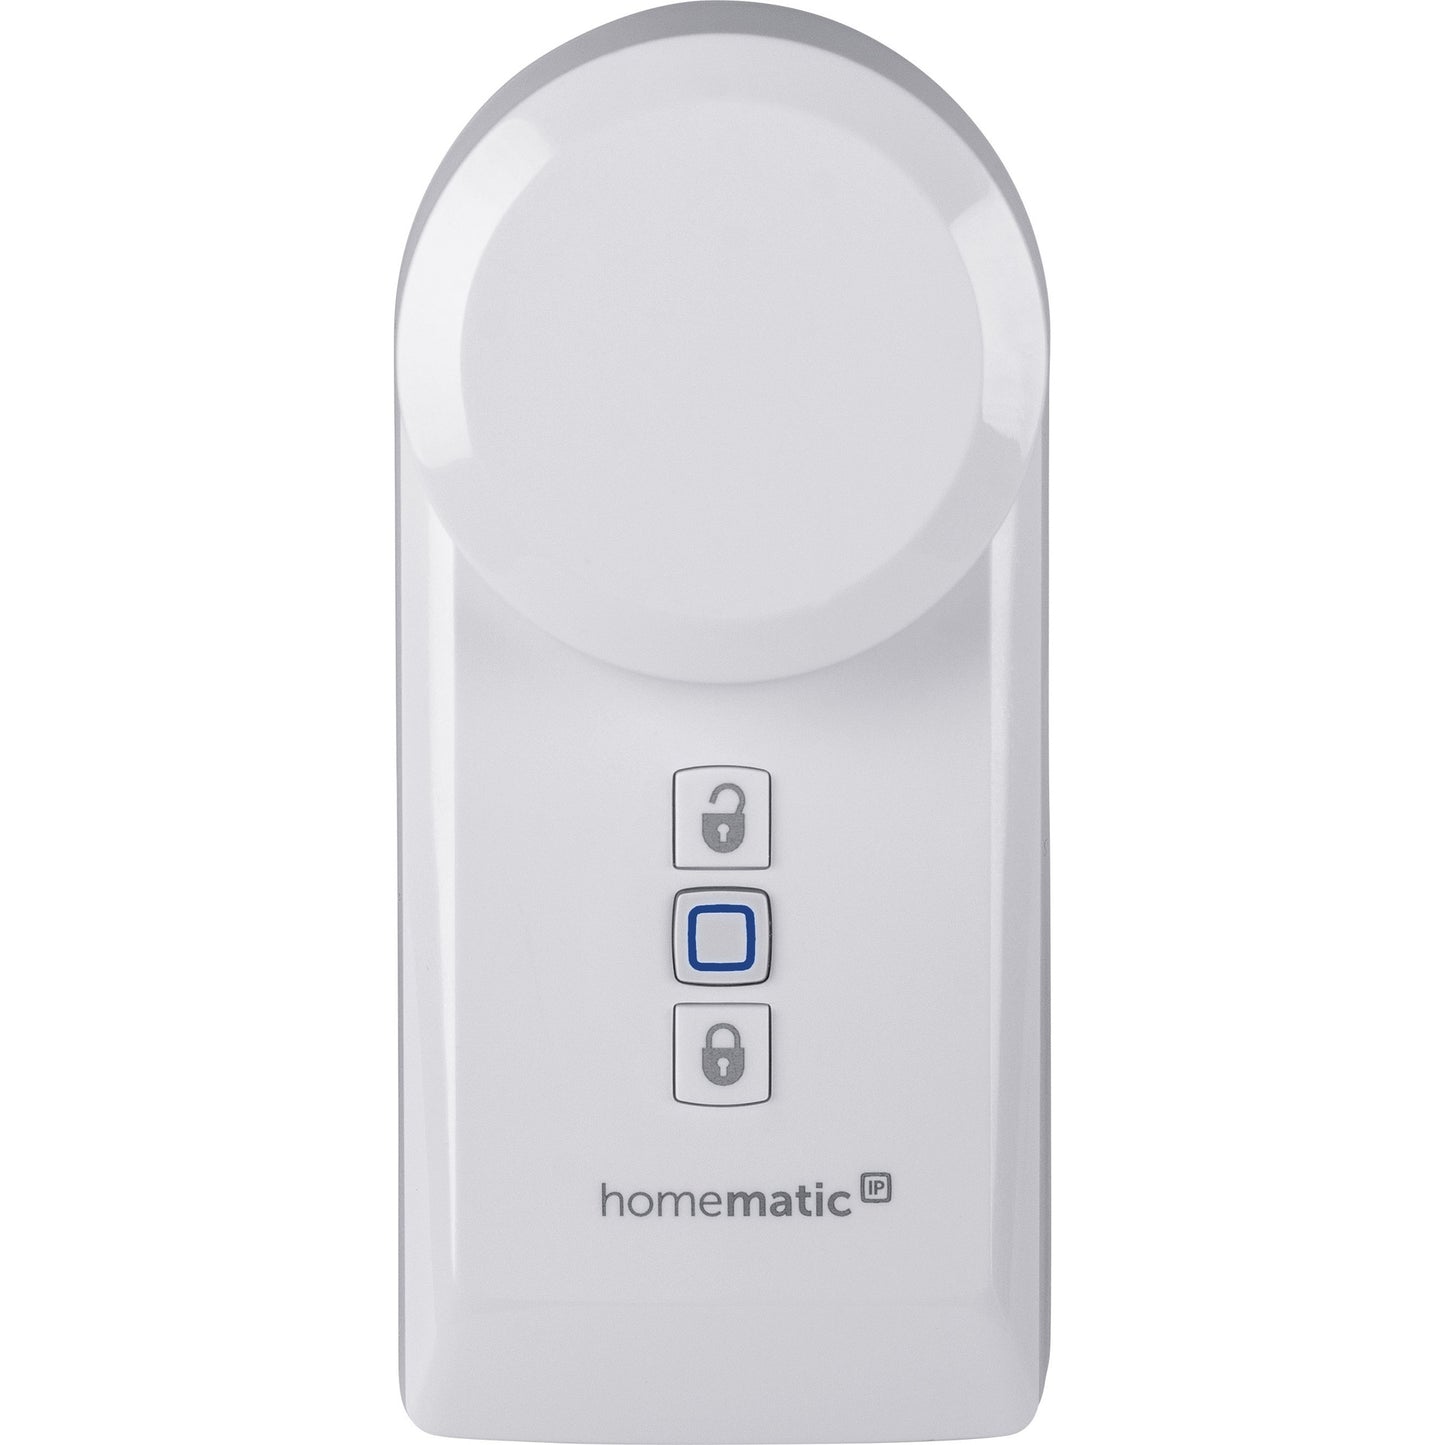 Homematic IP Smart Home Zugangslösung mit Access Point, Türschlossantrieb, Keypad und Fernbedienung